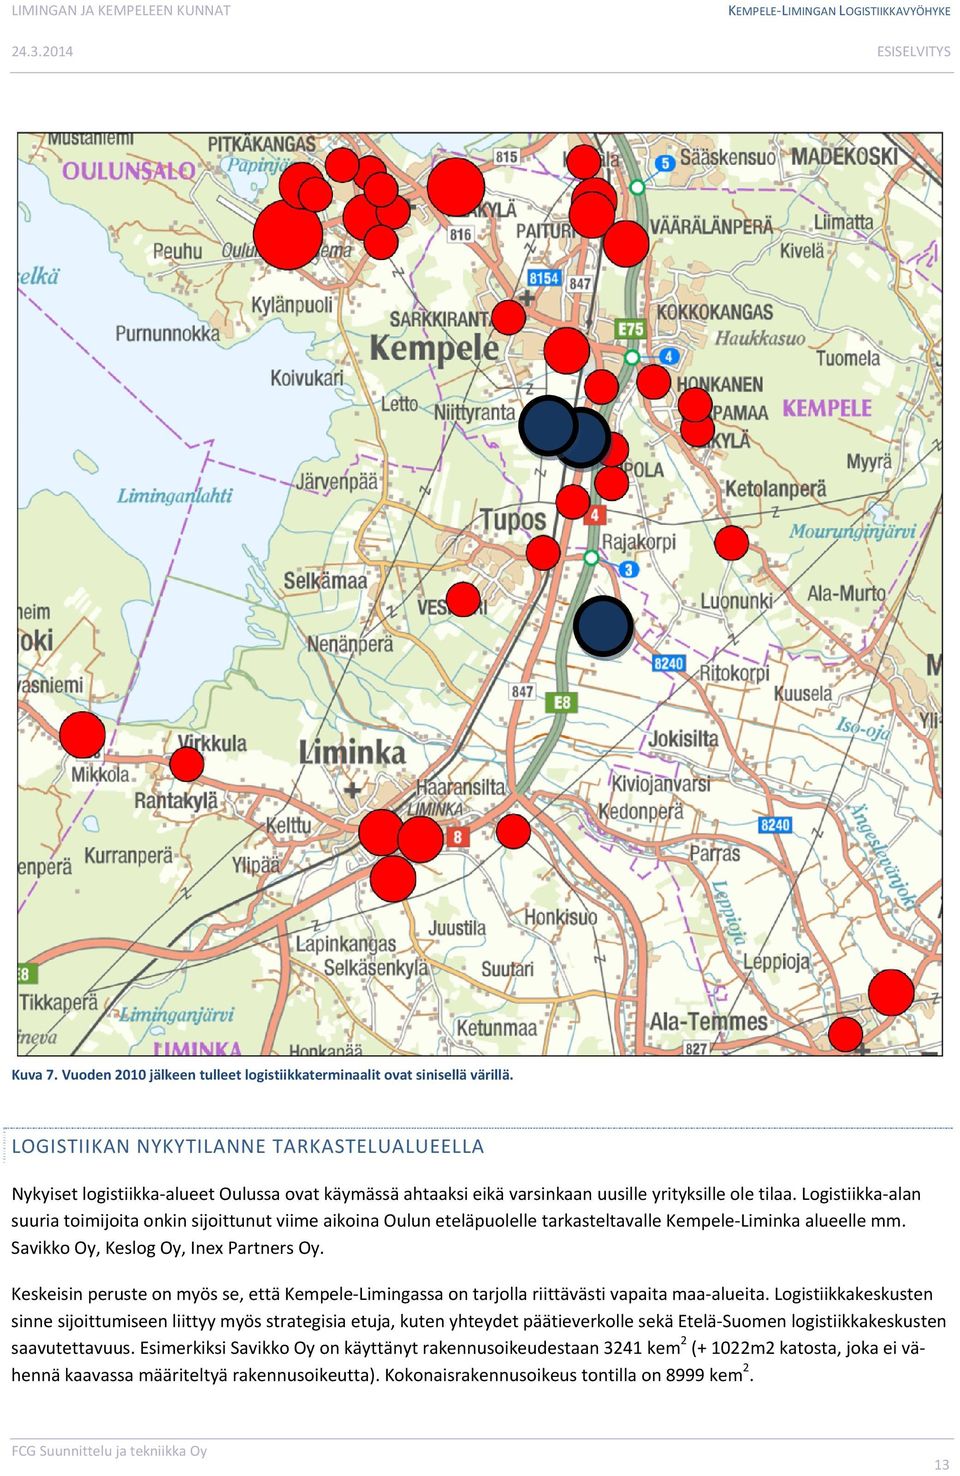 Logistiikka alan suuria toimijoita onkin sijoittunut viime aikoina Oulun eteläpuolelle tarkasteltavalle Kempele Liminka alueelle mm. Savikko Oy, Keslog Oy, Inex Partners Oy.